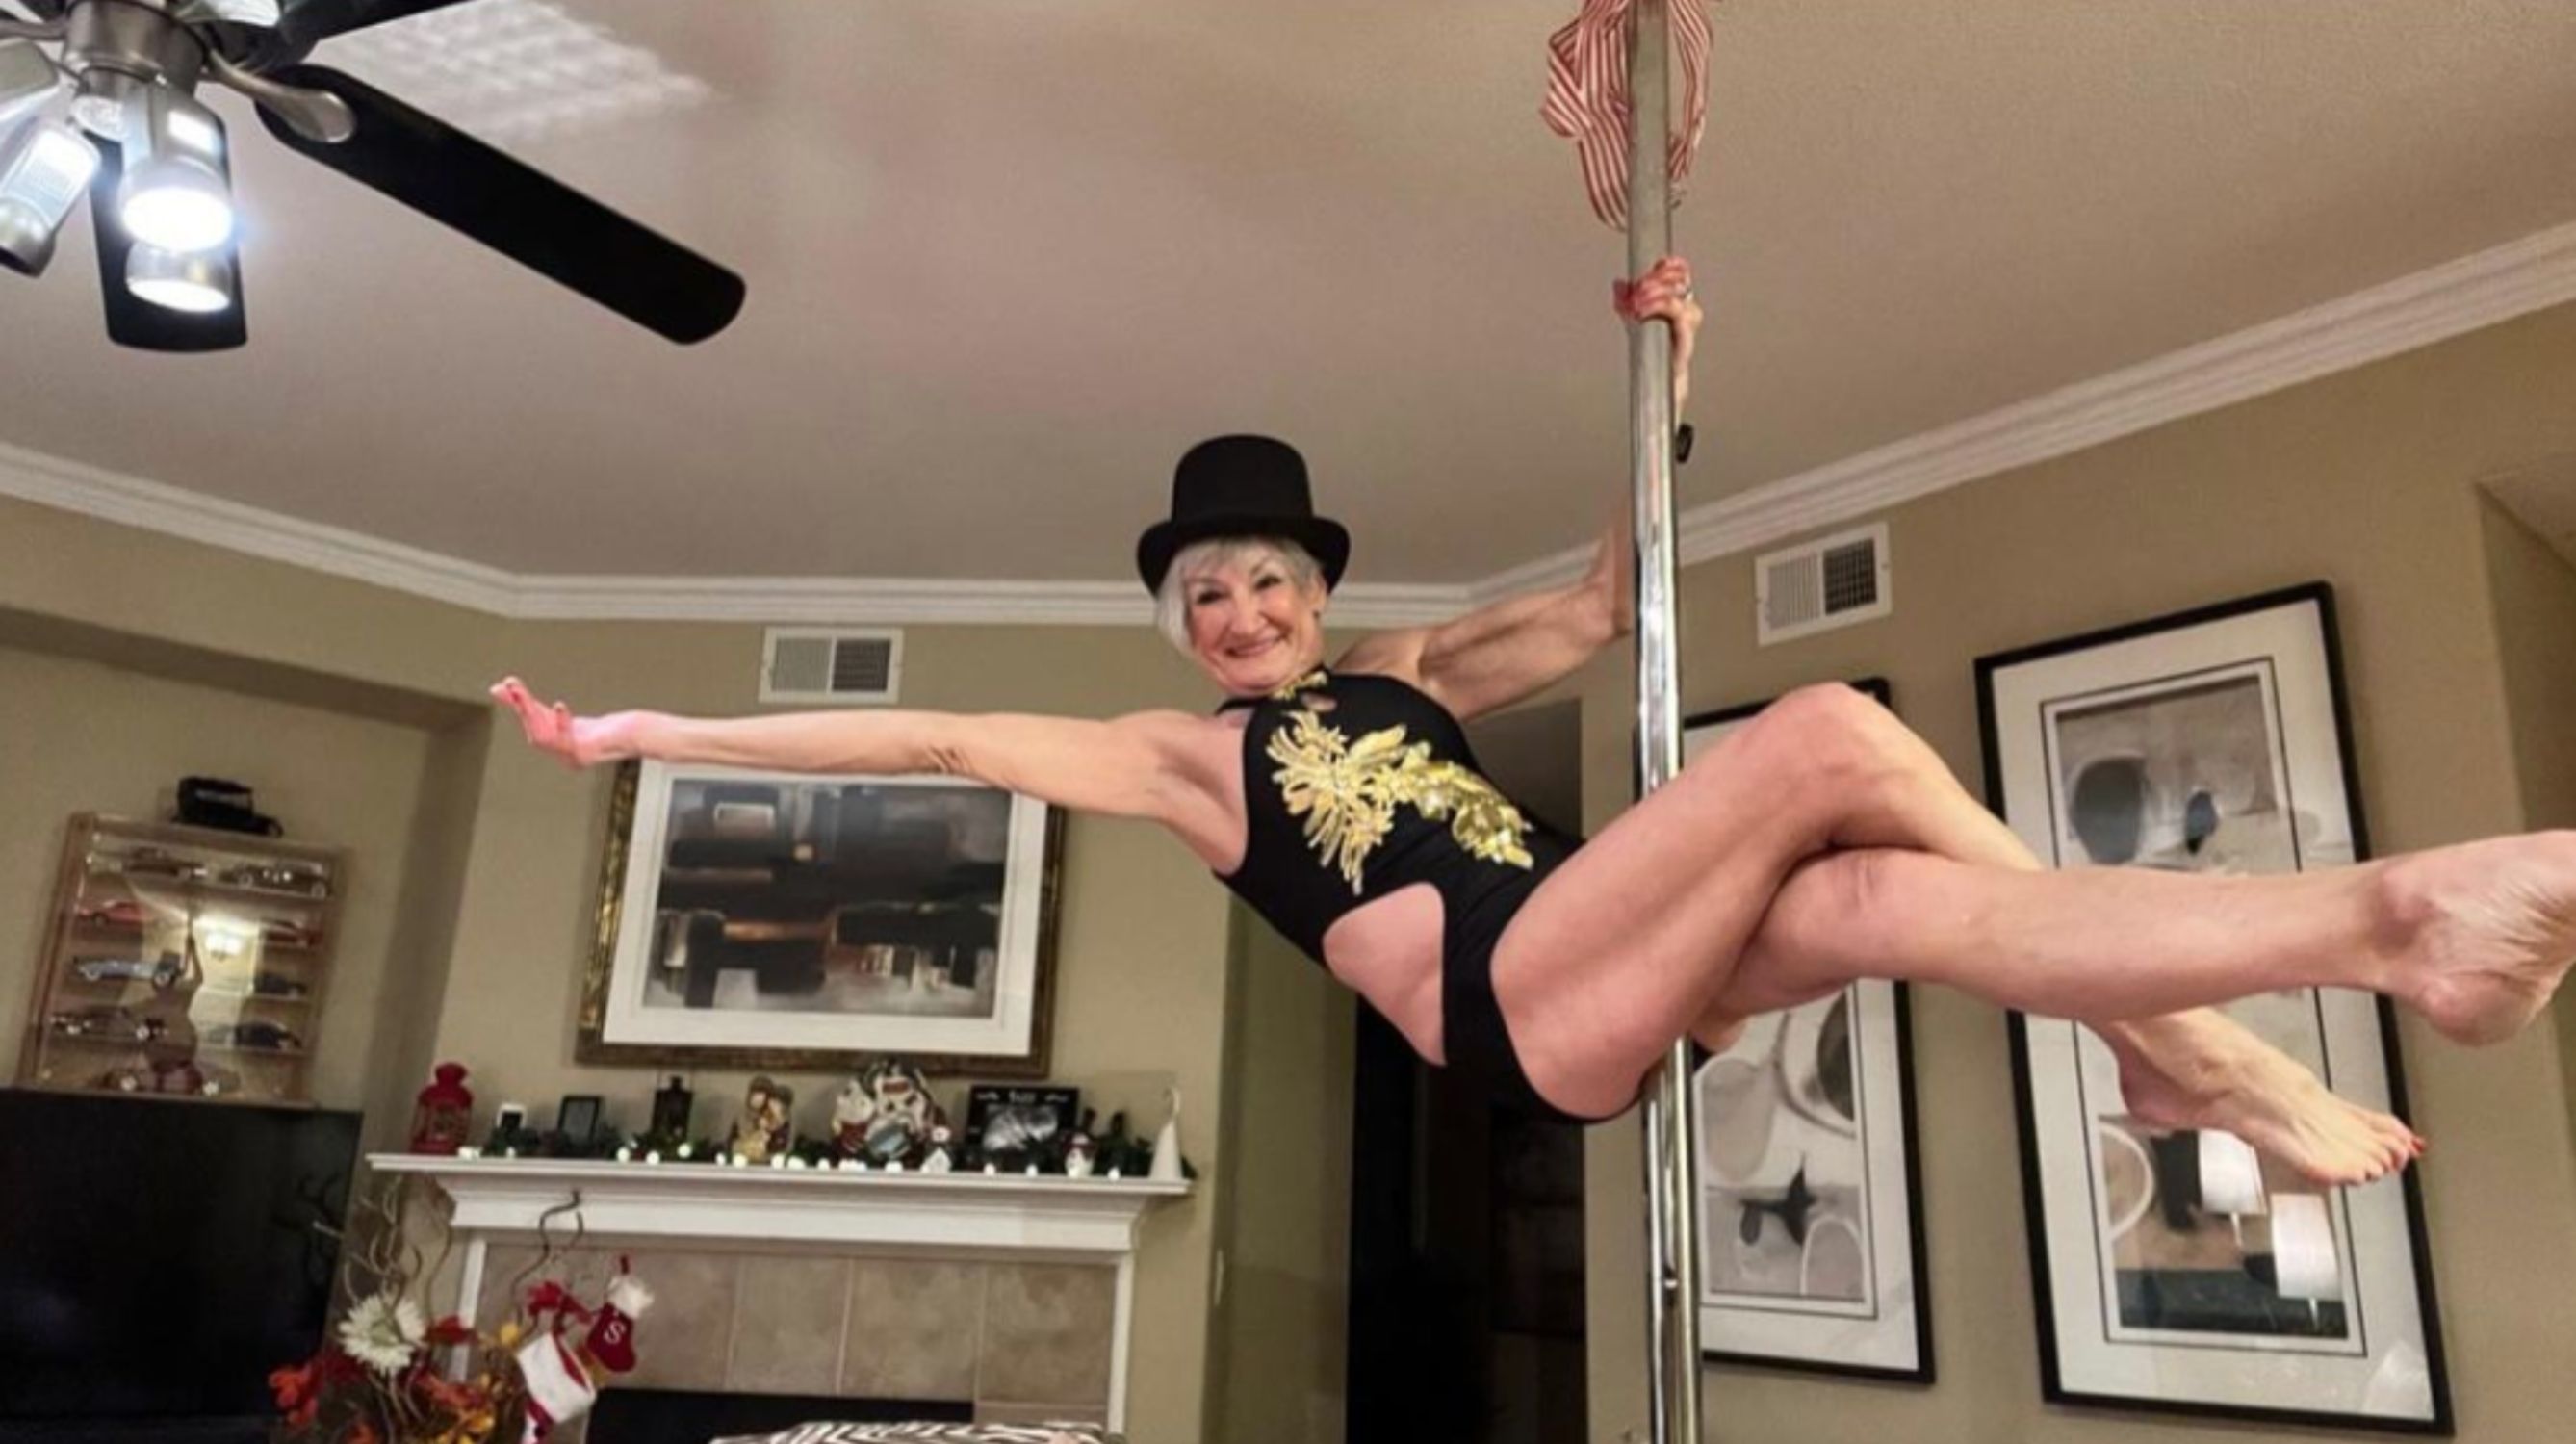 Una mujer de 75 años cumple su sueño y se convierte en bailarina de pole dance: "Intento inspirar". Foto: Instagram